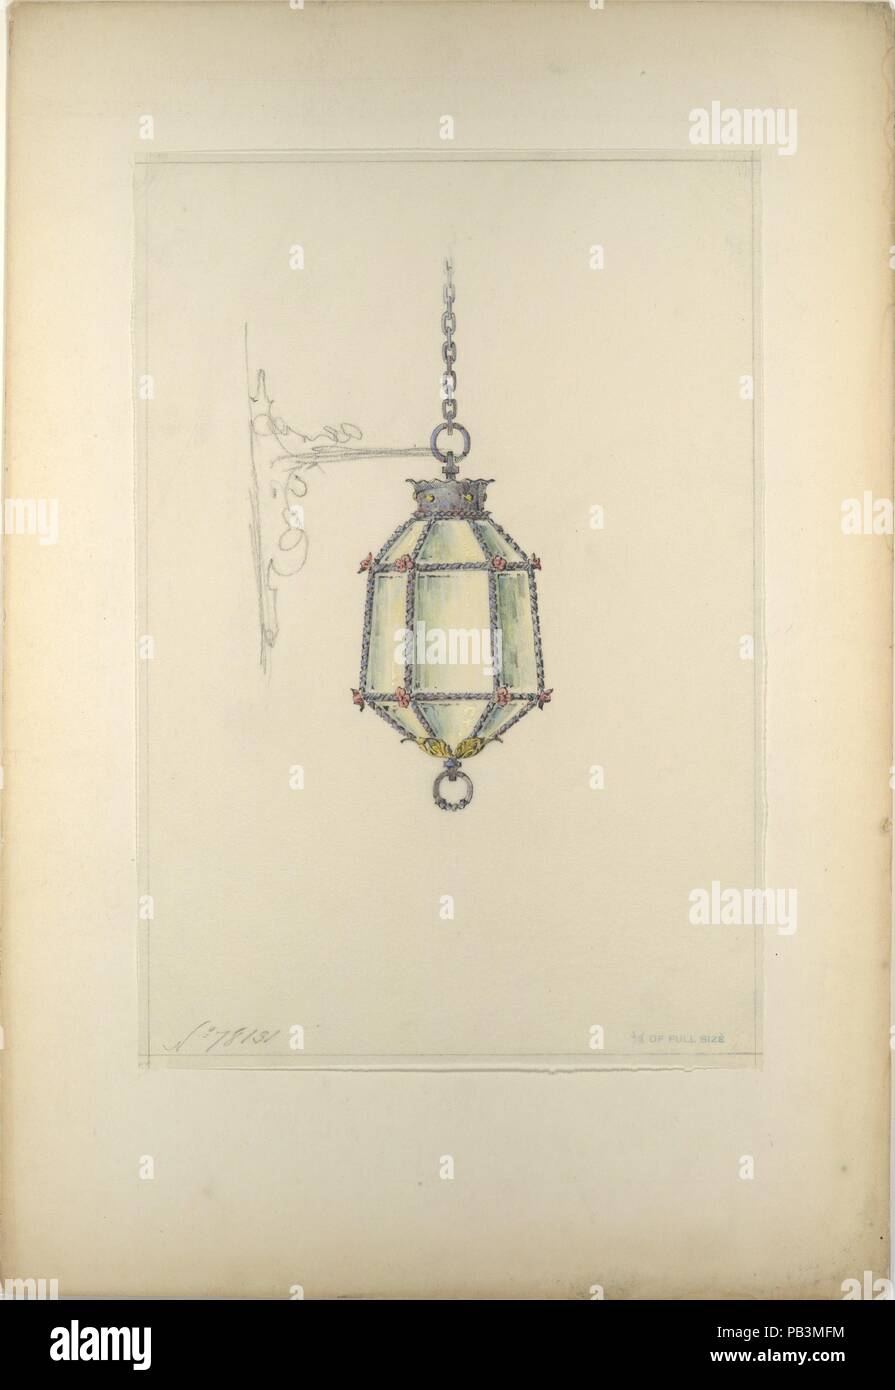 Pour suspendre Design luminaire. Artiste : Louis Comfort Tiffany (1848-1933, New York New York). Culture : L'Américain. Dimensions : hors tout : 22 1/16 x 15 1/16 in. (56,1 x 38,3 cm) d'autres (Design) : 15 3/16 x 10 9/16 in. (38,6 x 26,8 cm). Bouilloire : Peut-être le verre selon Tiffany et Decorating Company (Américain, 1892-1902) ; éventuellement Tiffany Studios (1902-32) ; éventuellement le verre selon Tiffany (Entreprise) (1885-1892). Date : fin du xixe ou début du xxe siècle. Musée : Metropolitan Museum of Art, New York, USA. Banque D'Images